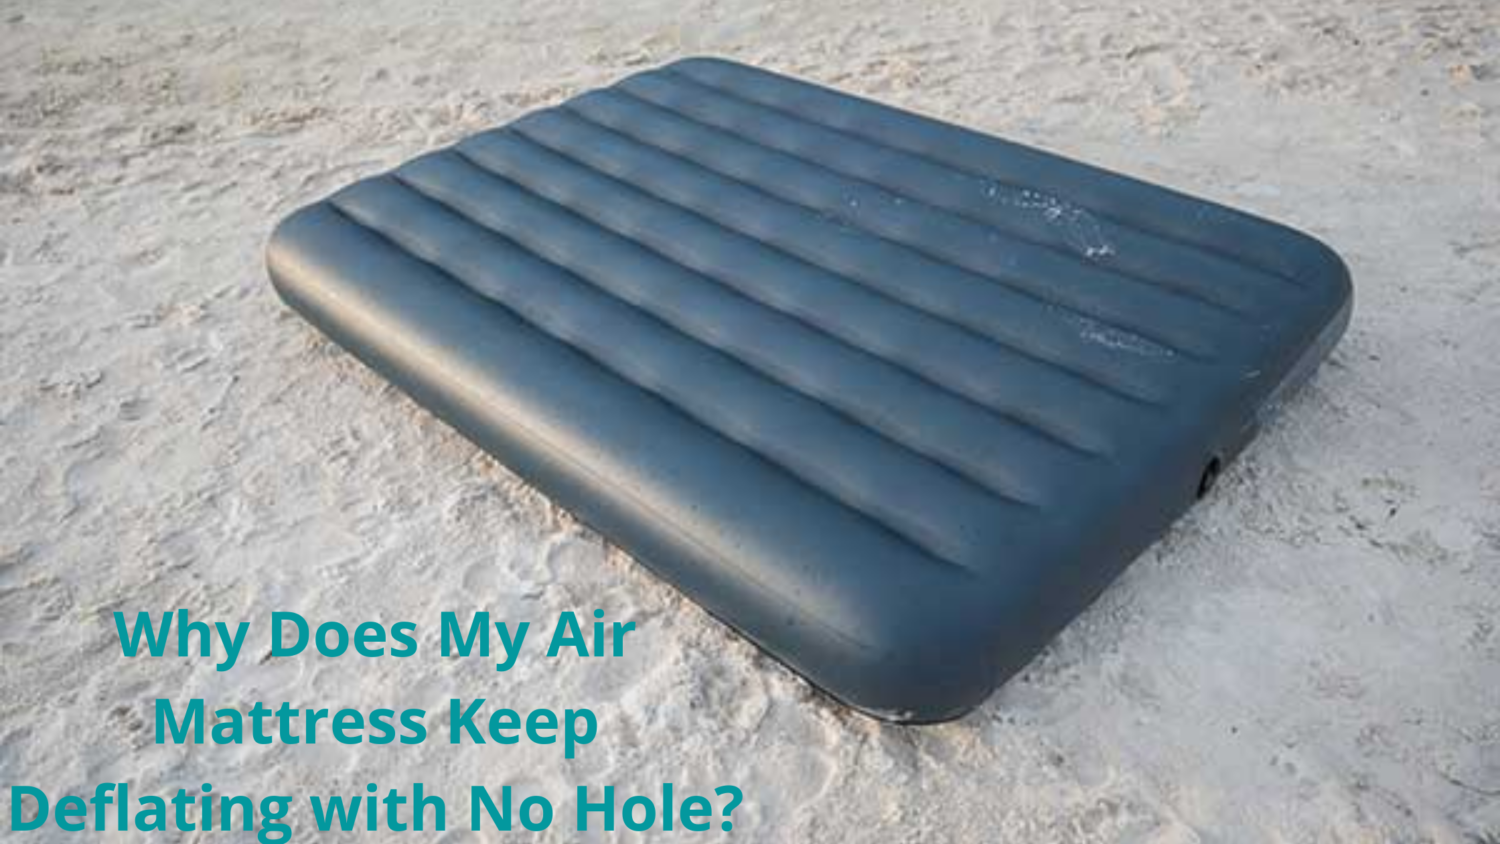 air mattress deflates after a few minutes